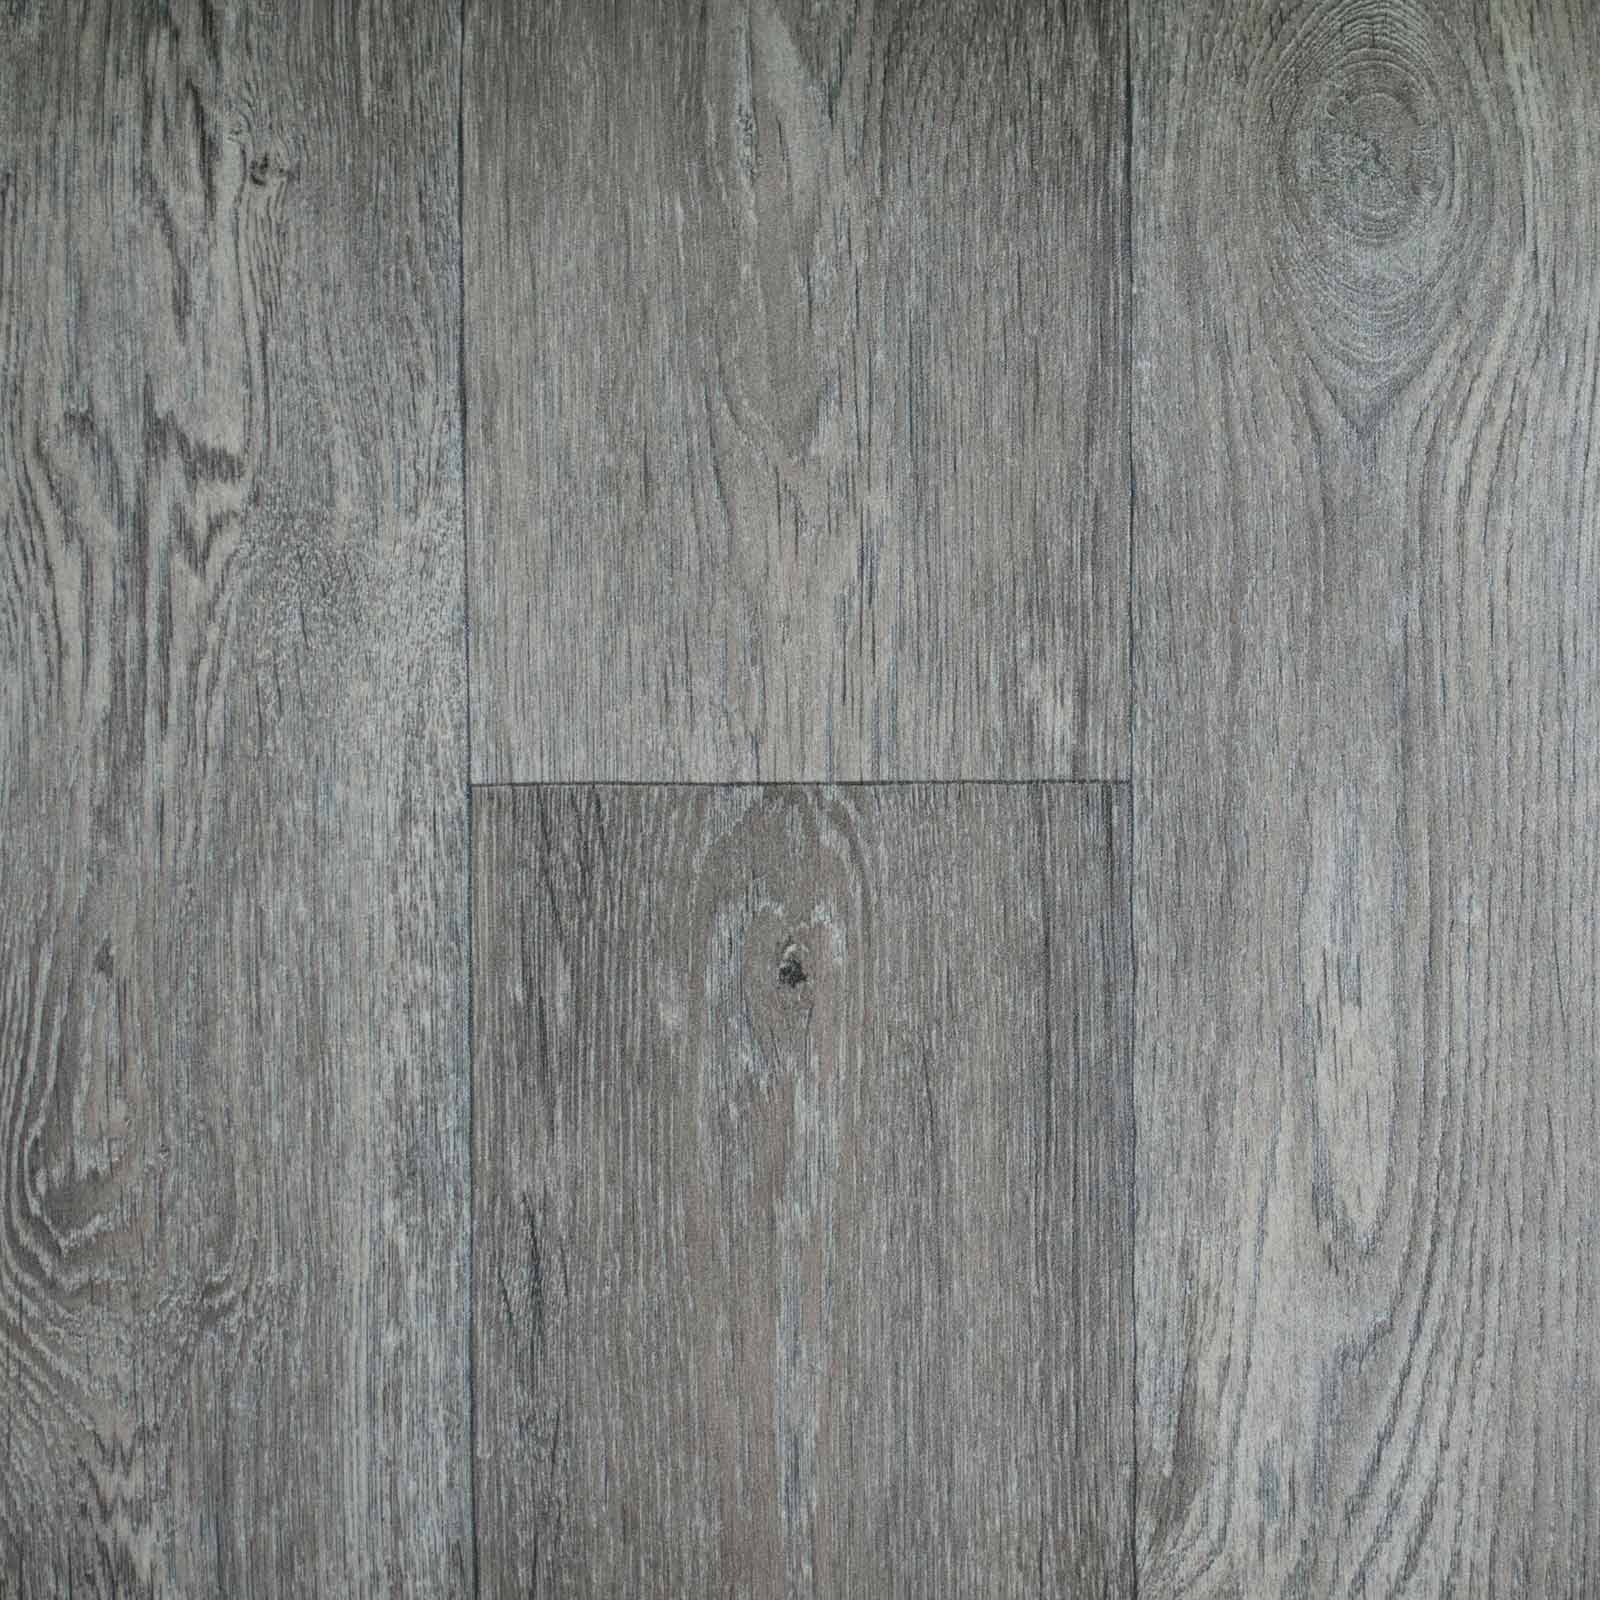 Warm Grey Aged Oak Wood Style Vinyl Flooring - Far